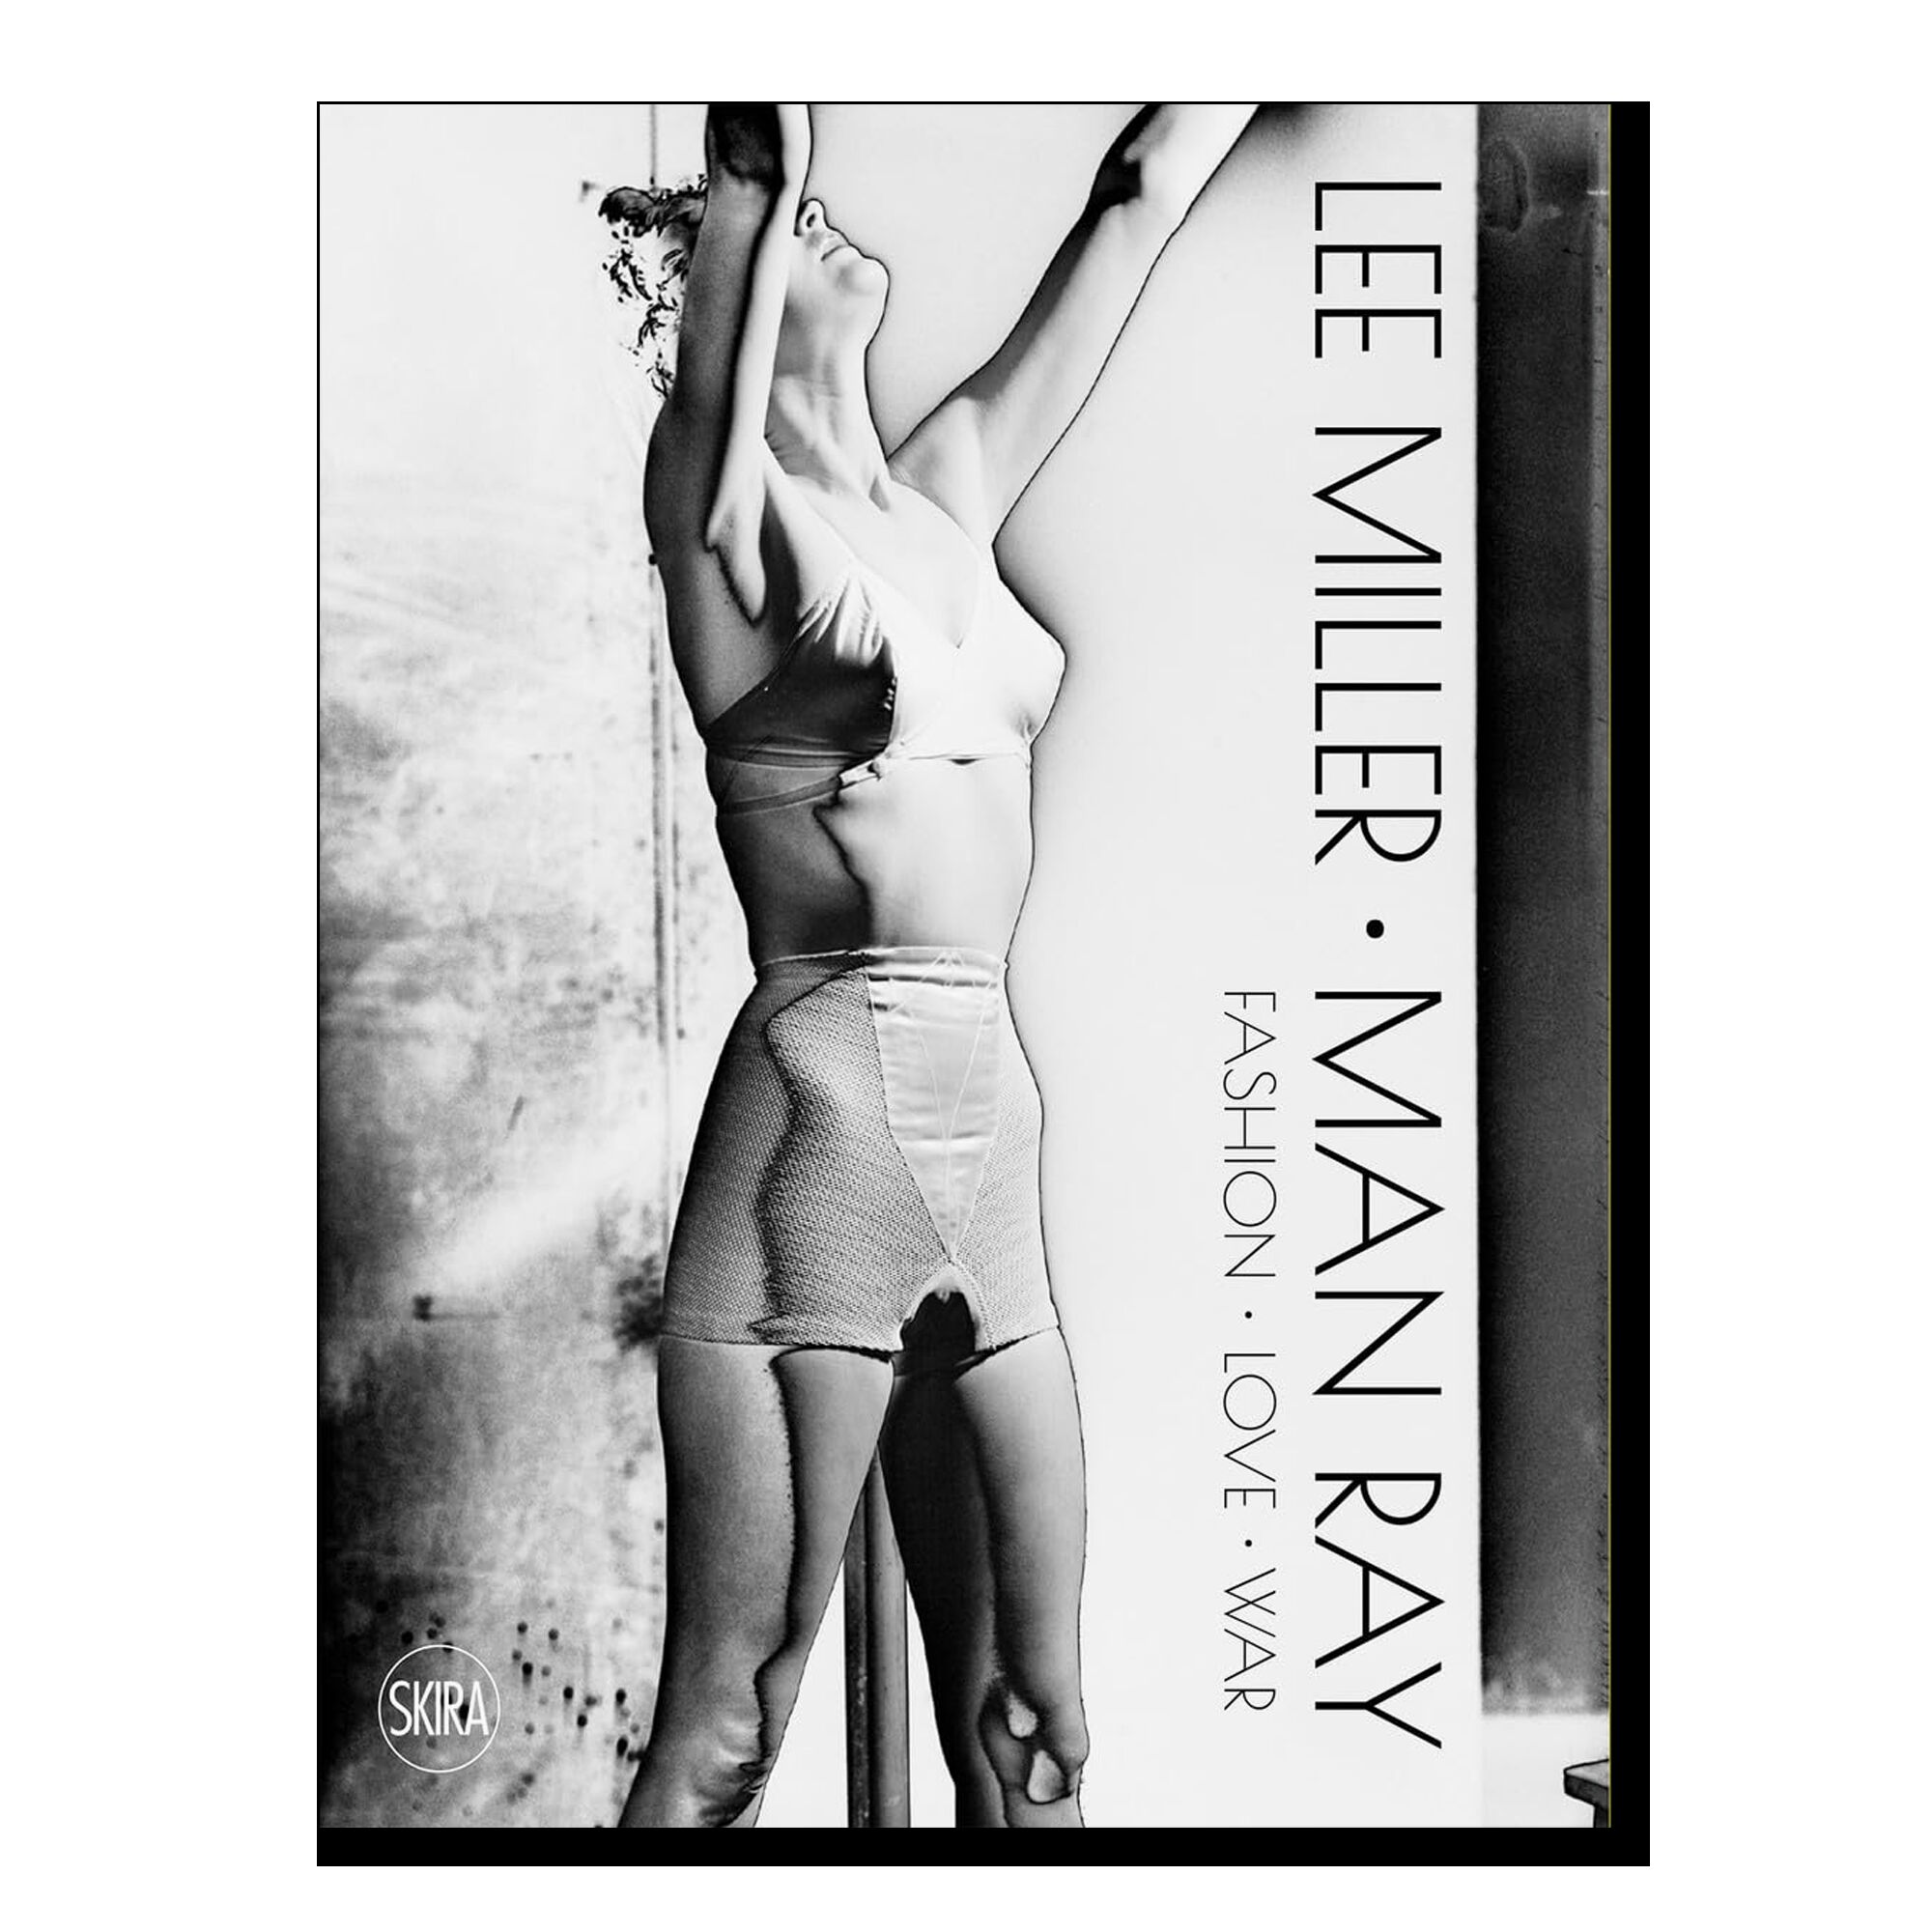 Lee Miller & Man Ray: Fashion, Love, War